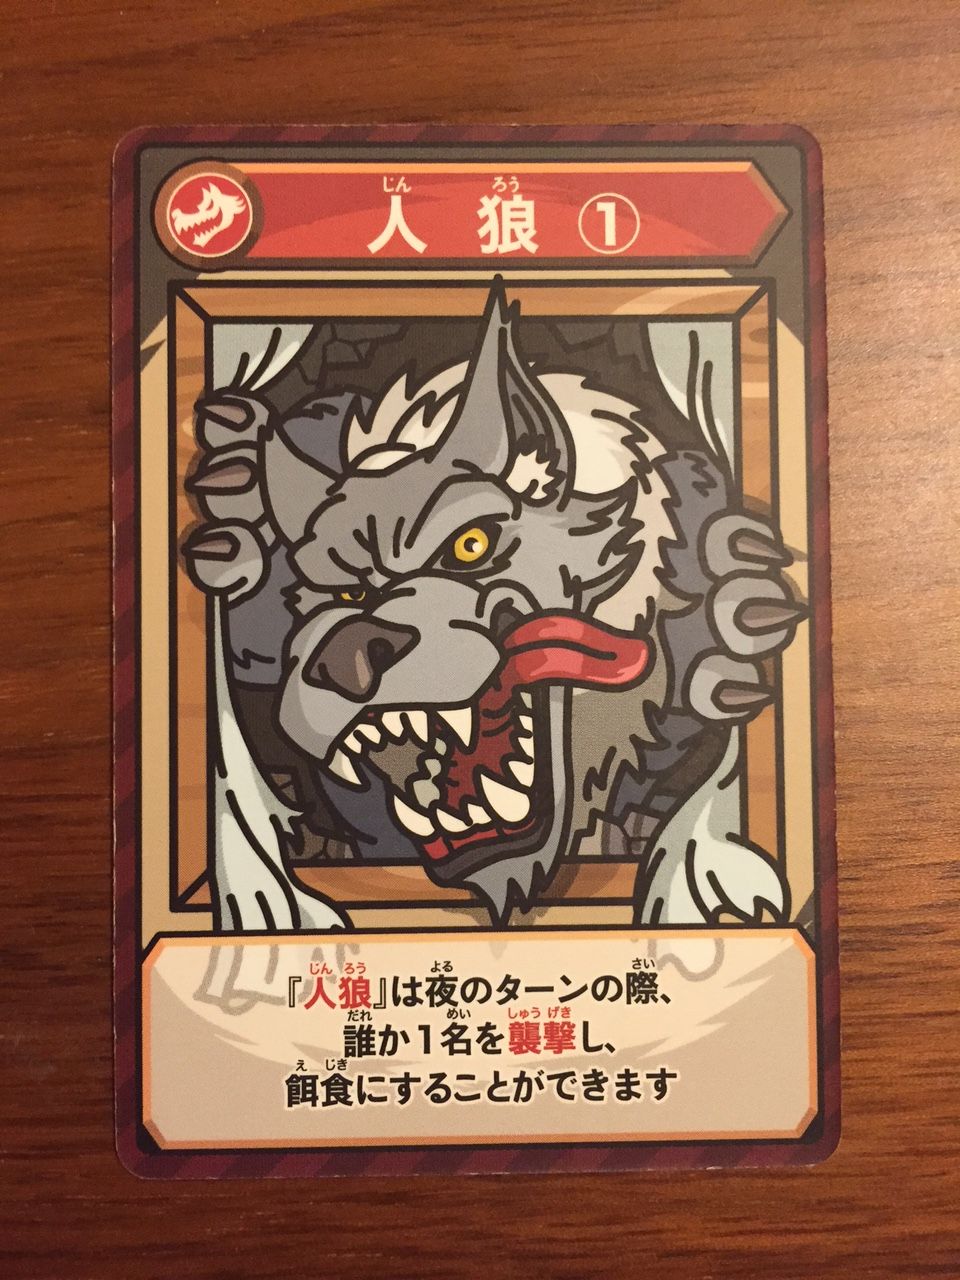 人狼 嘘つきは誰だ カードバトル たしなみ グループで遊ぶカード ボードゲーム